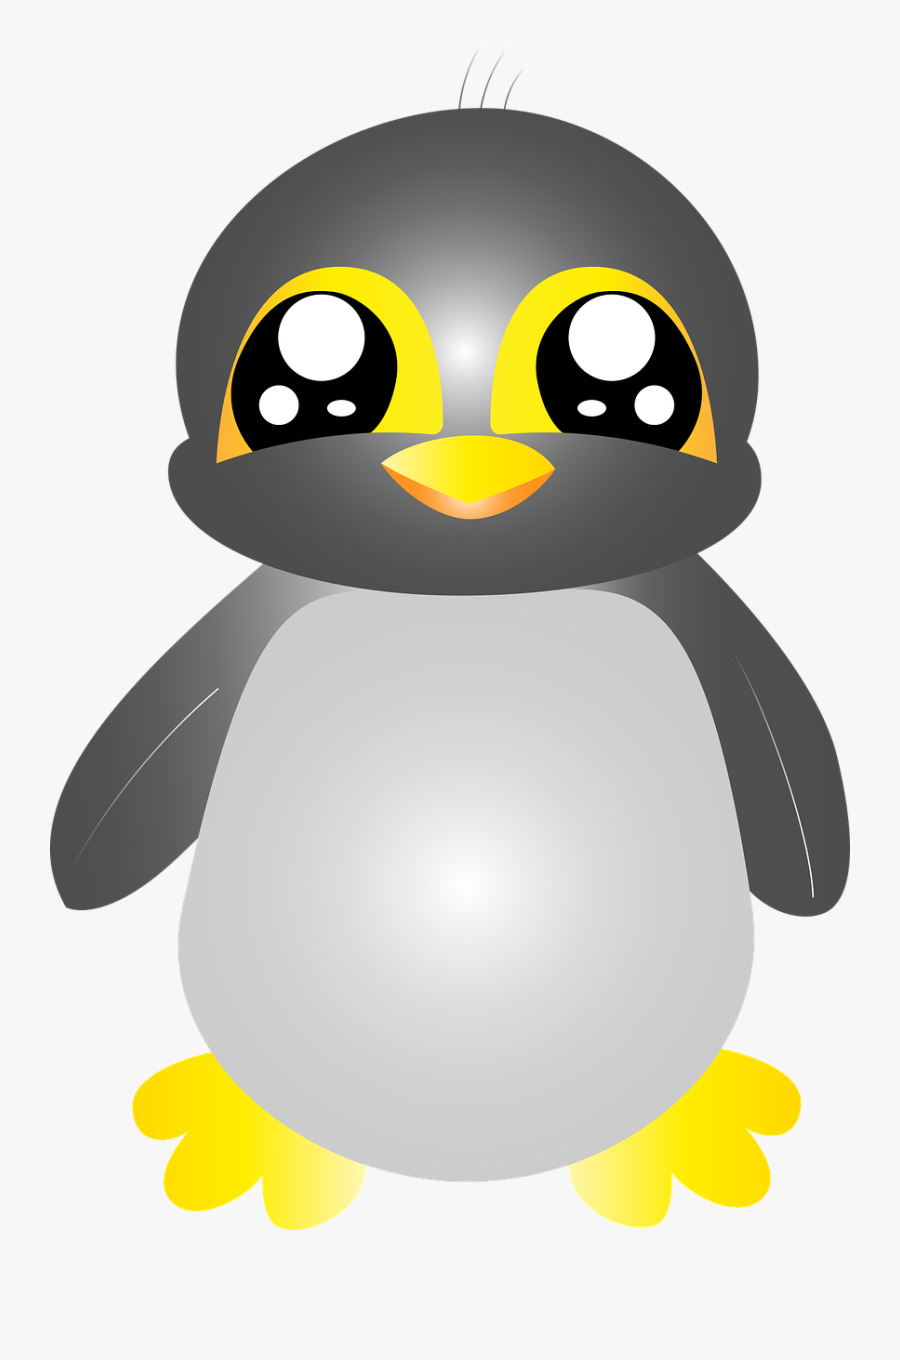 Cute Penguin Animal Free Picture - Hình Chim Cánh Cụt Dễ Thương, Transparent Clipart